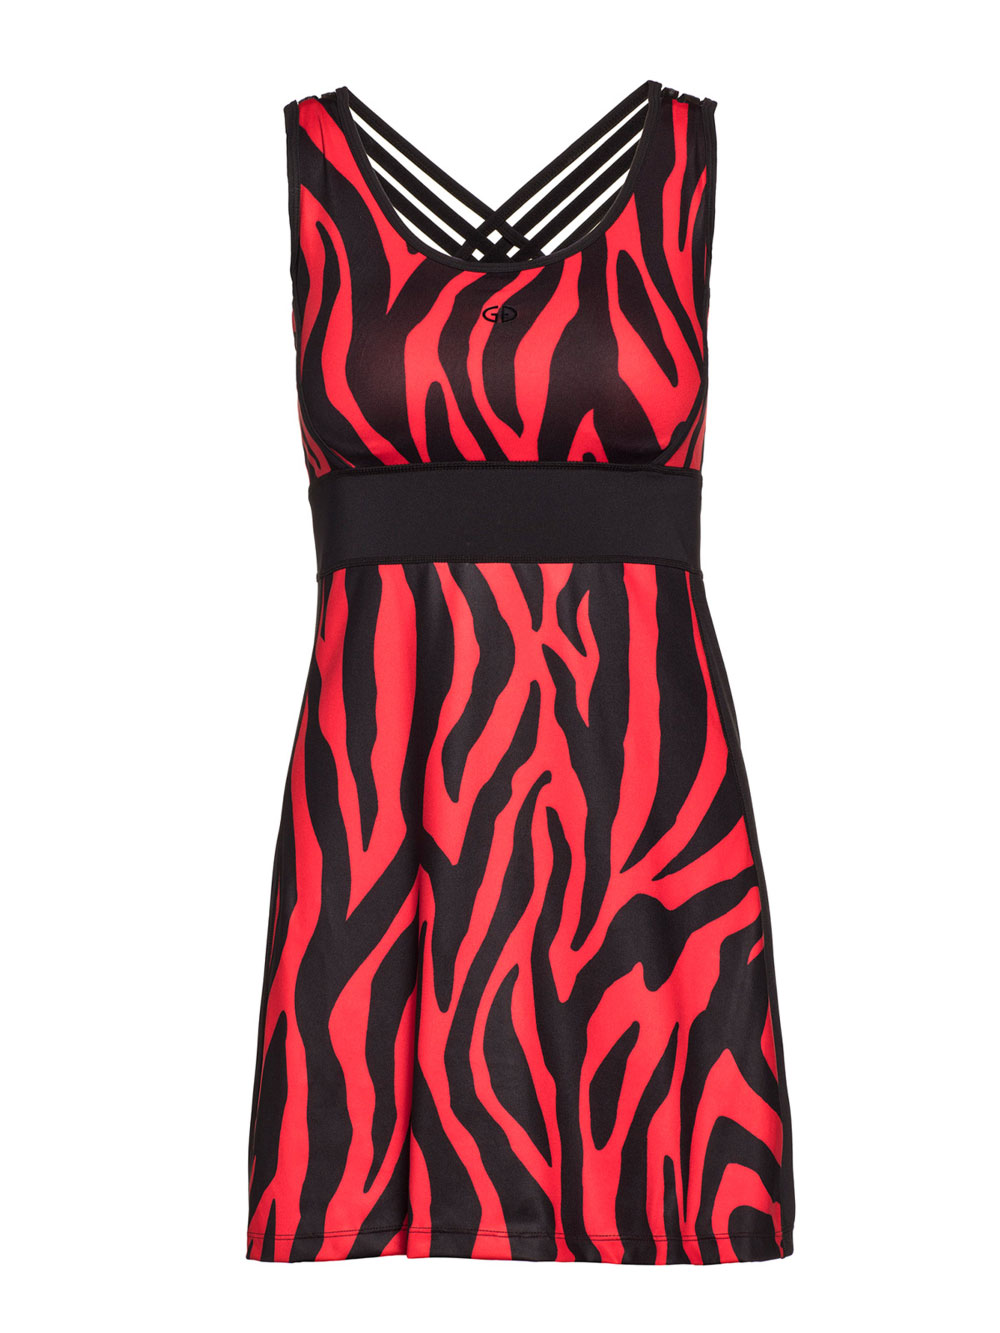 Tenisové šaty Tinda z kolekce Goldbergh Tiger Red